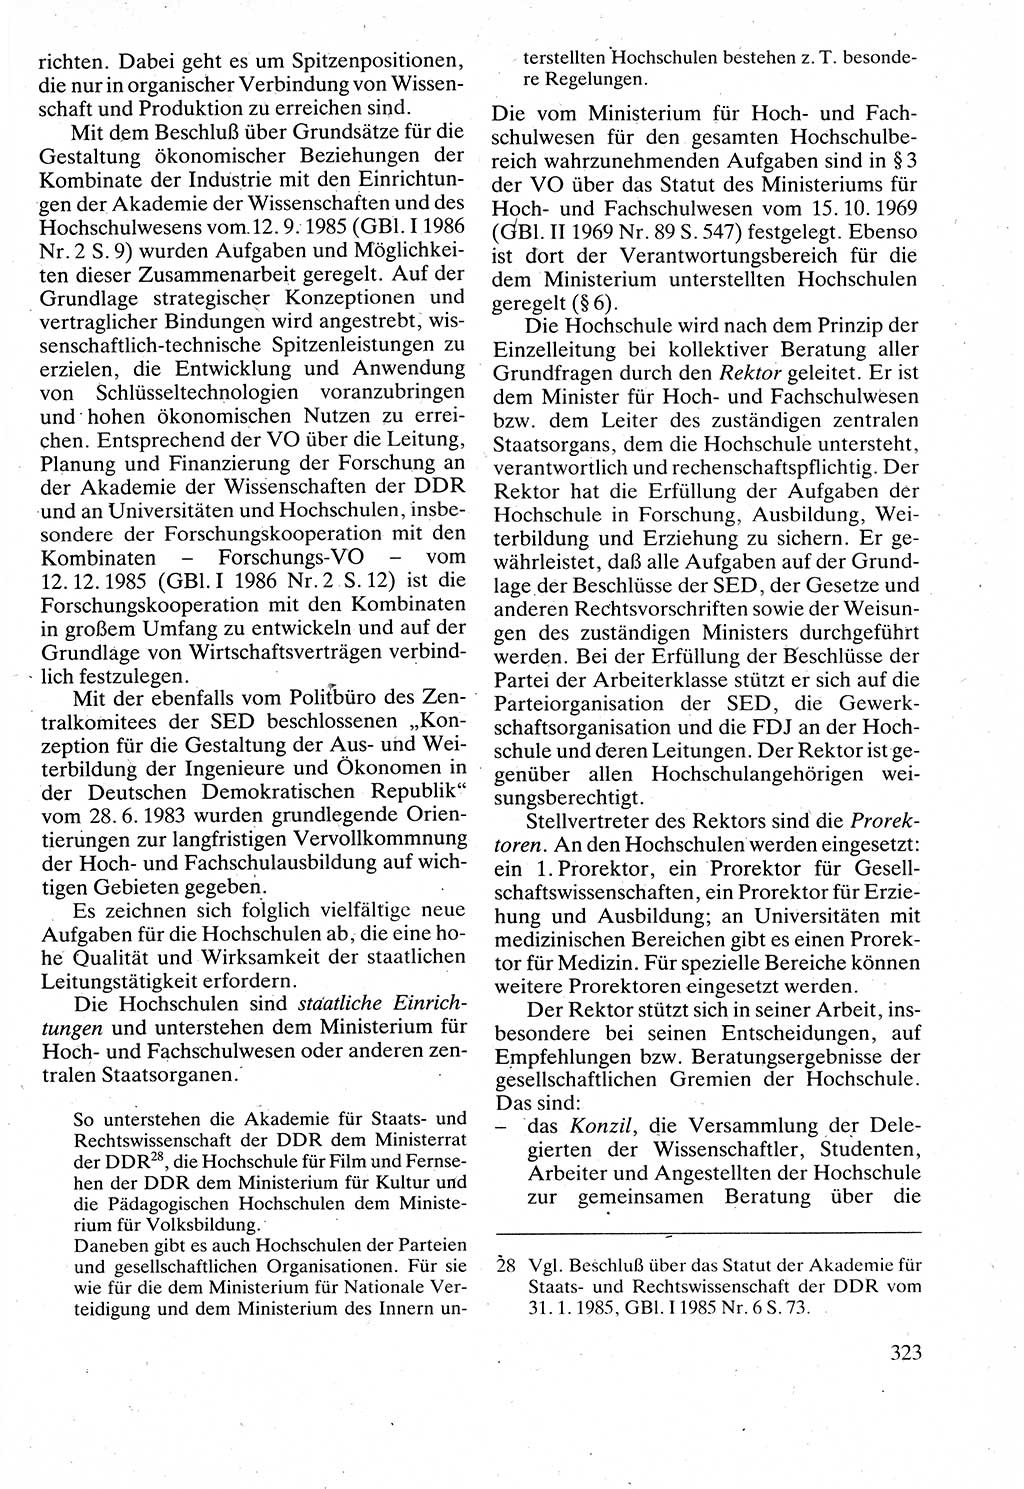 Verwaltungsrecht [Deutsche Demokratische Republik (DDR)], Lehrbuch 1988, Seite 323 (Verw.-R. DDR Lb. 1988, S. 323)